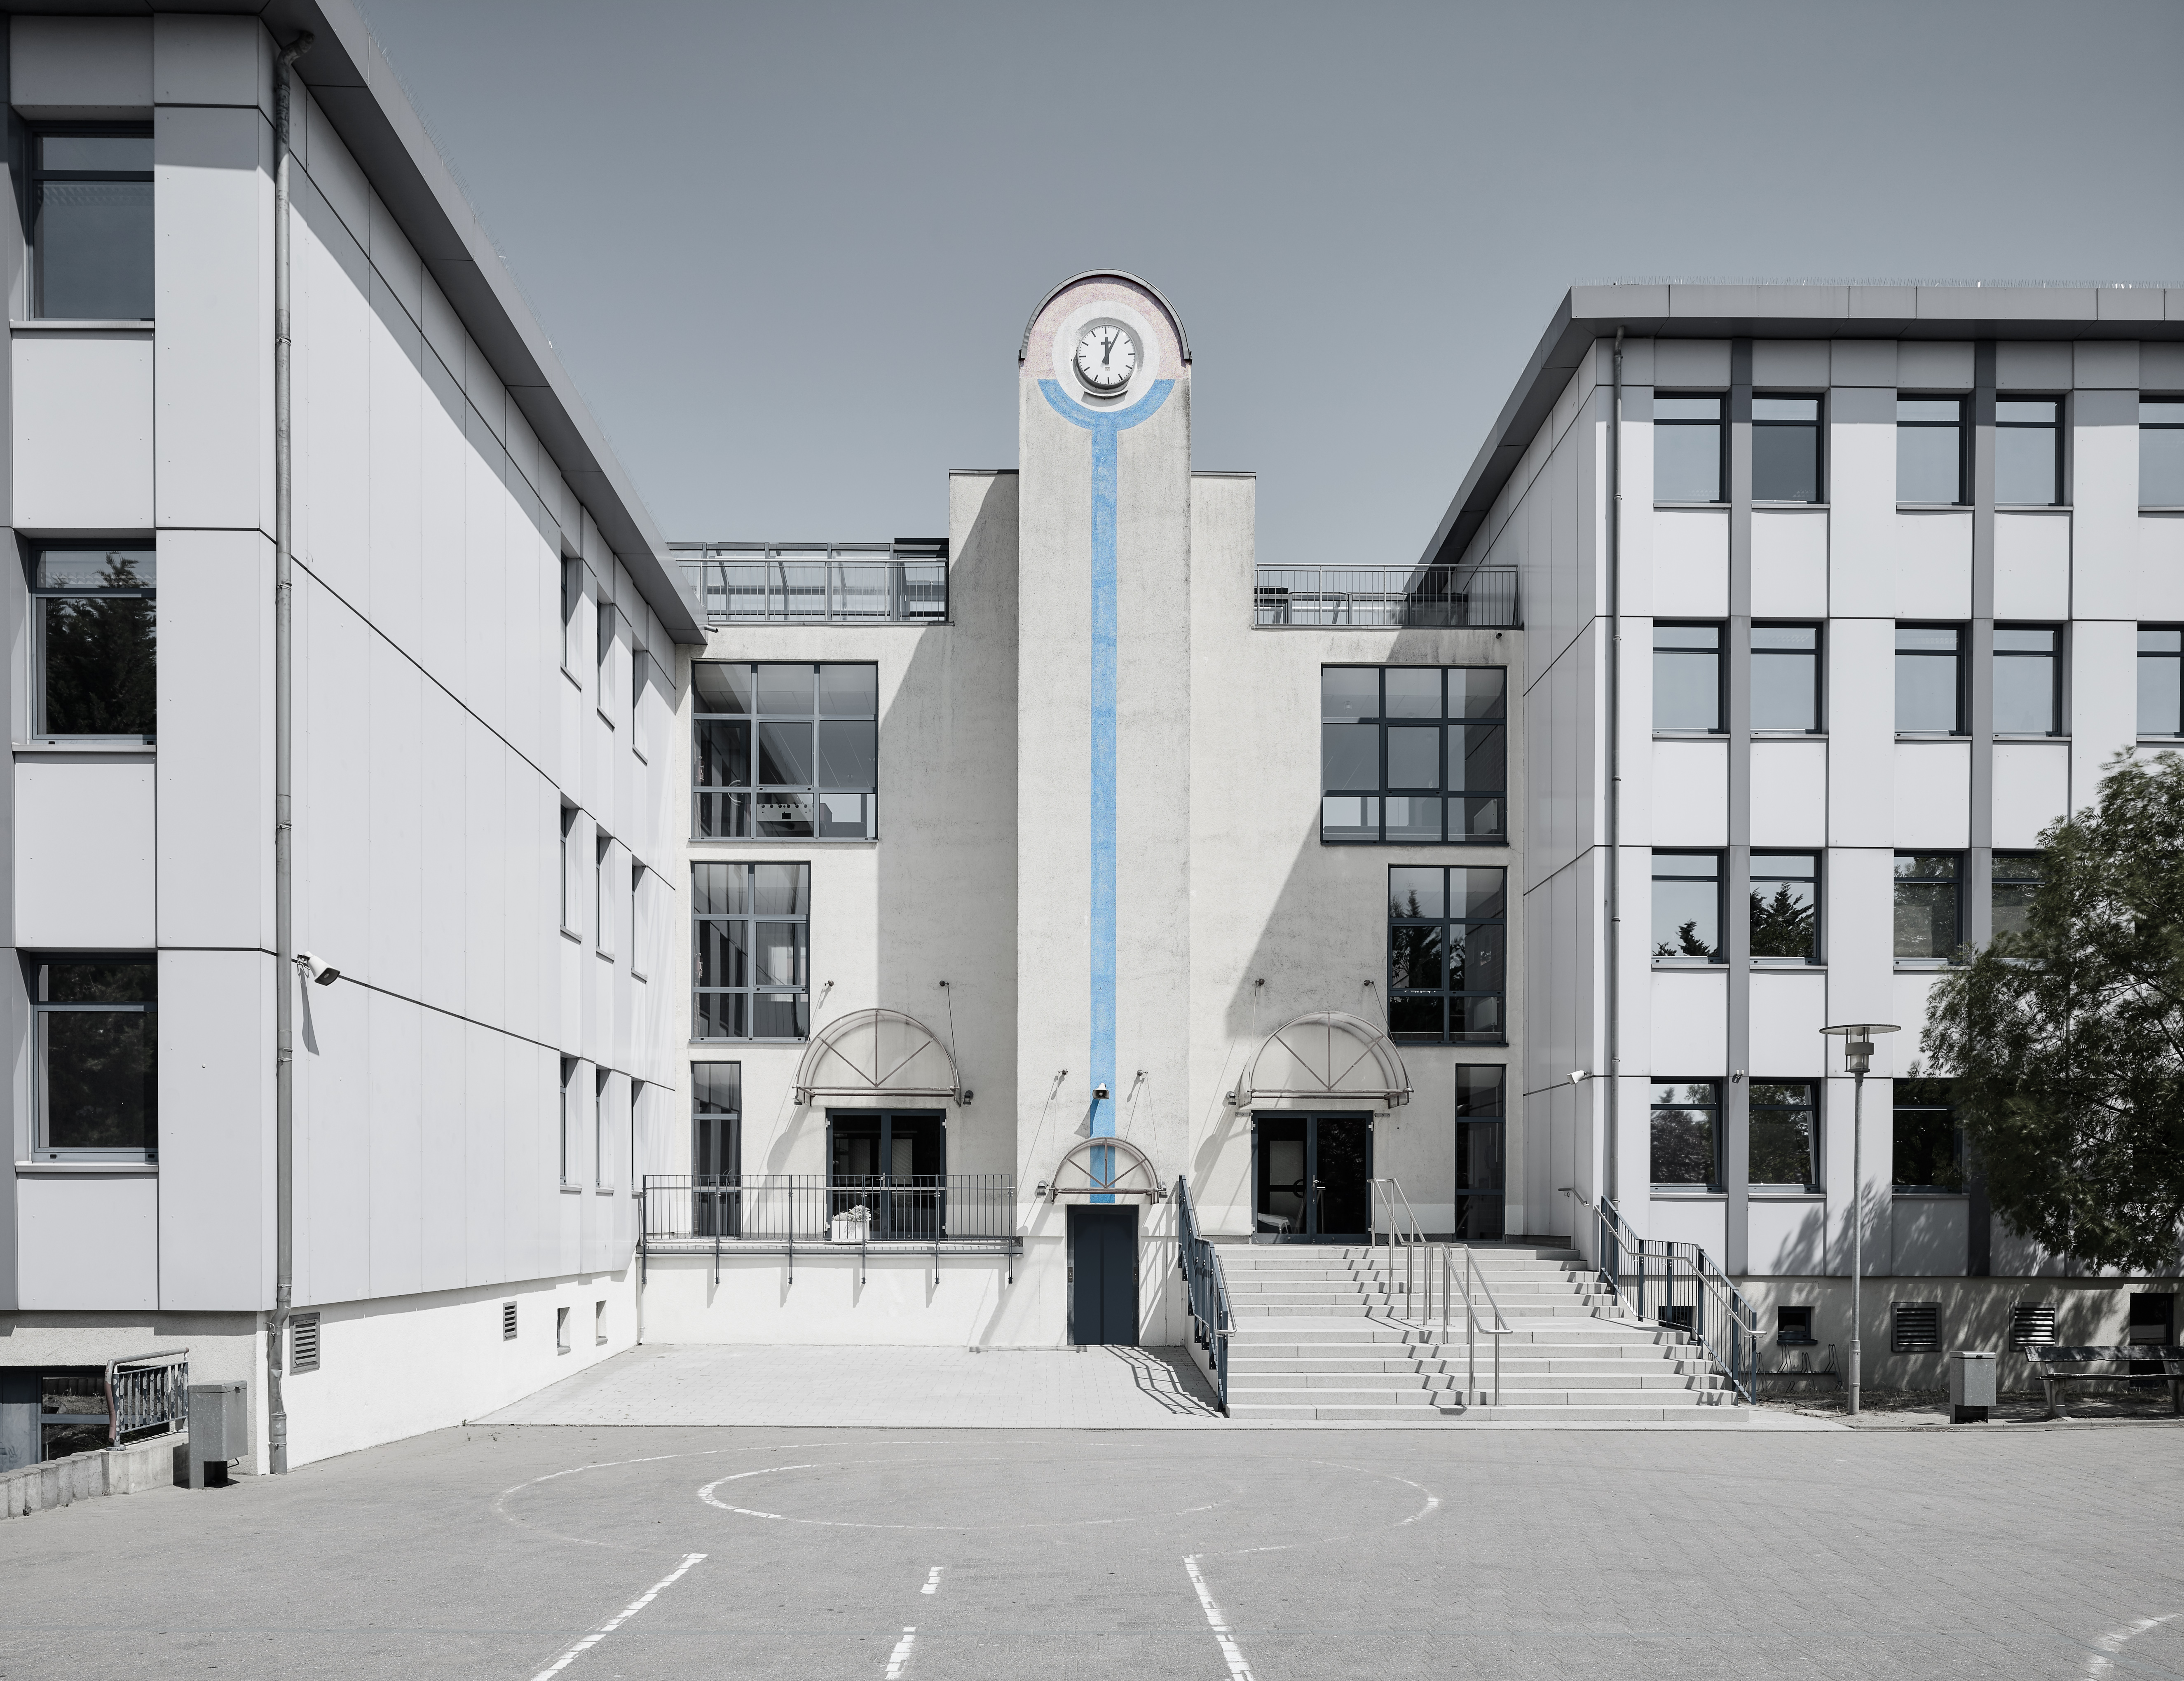 Hahnemannschule / Bild-1